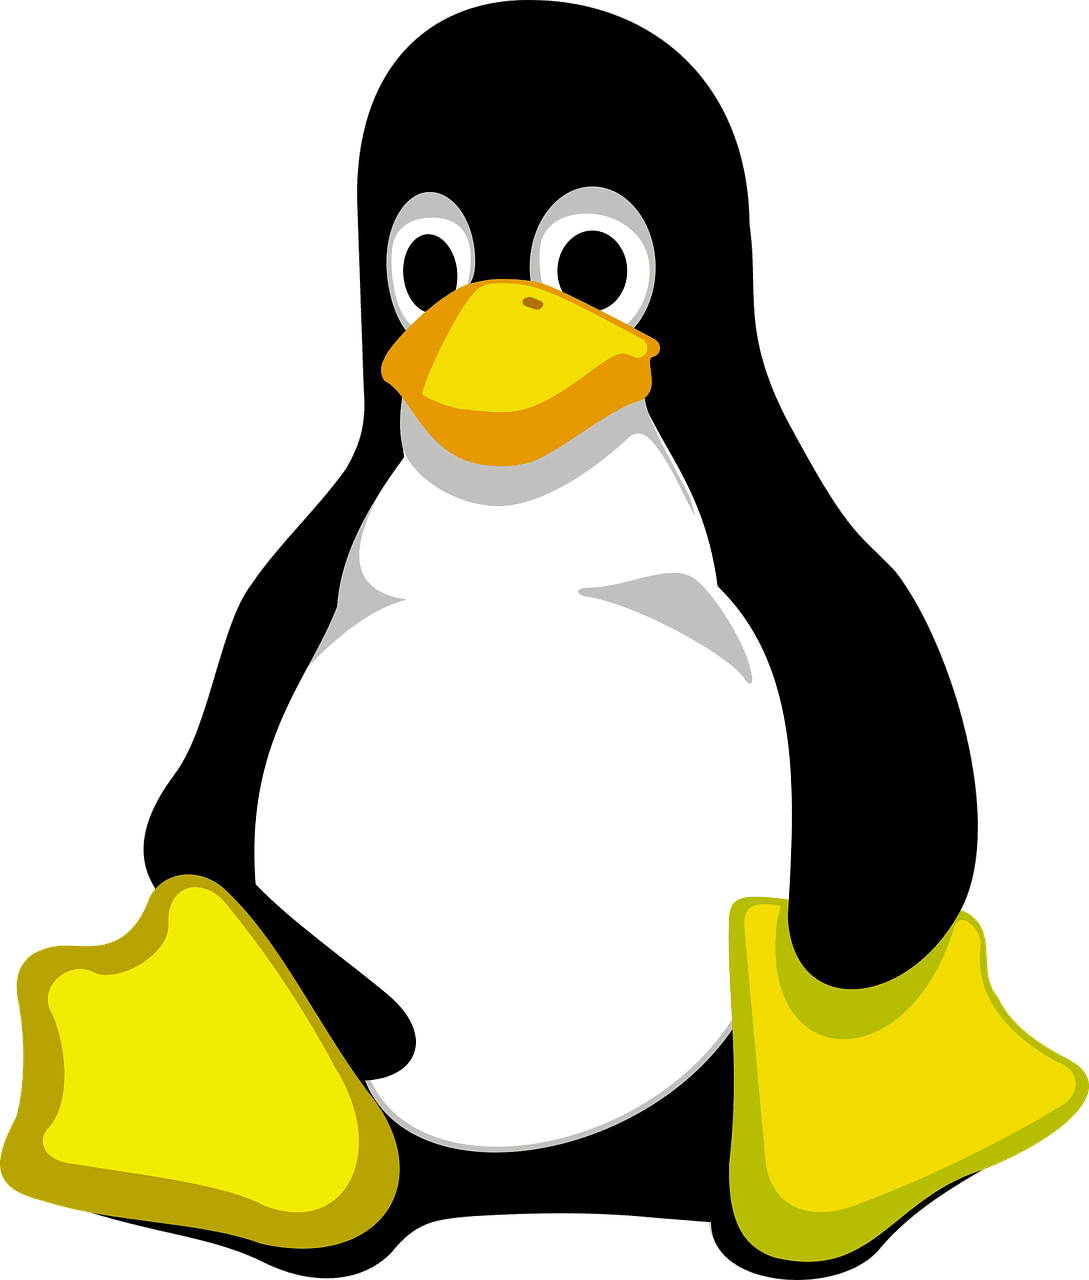 EndeavourOS : Arch Linux rendu facile pour tout le monde